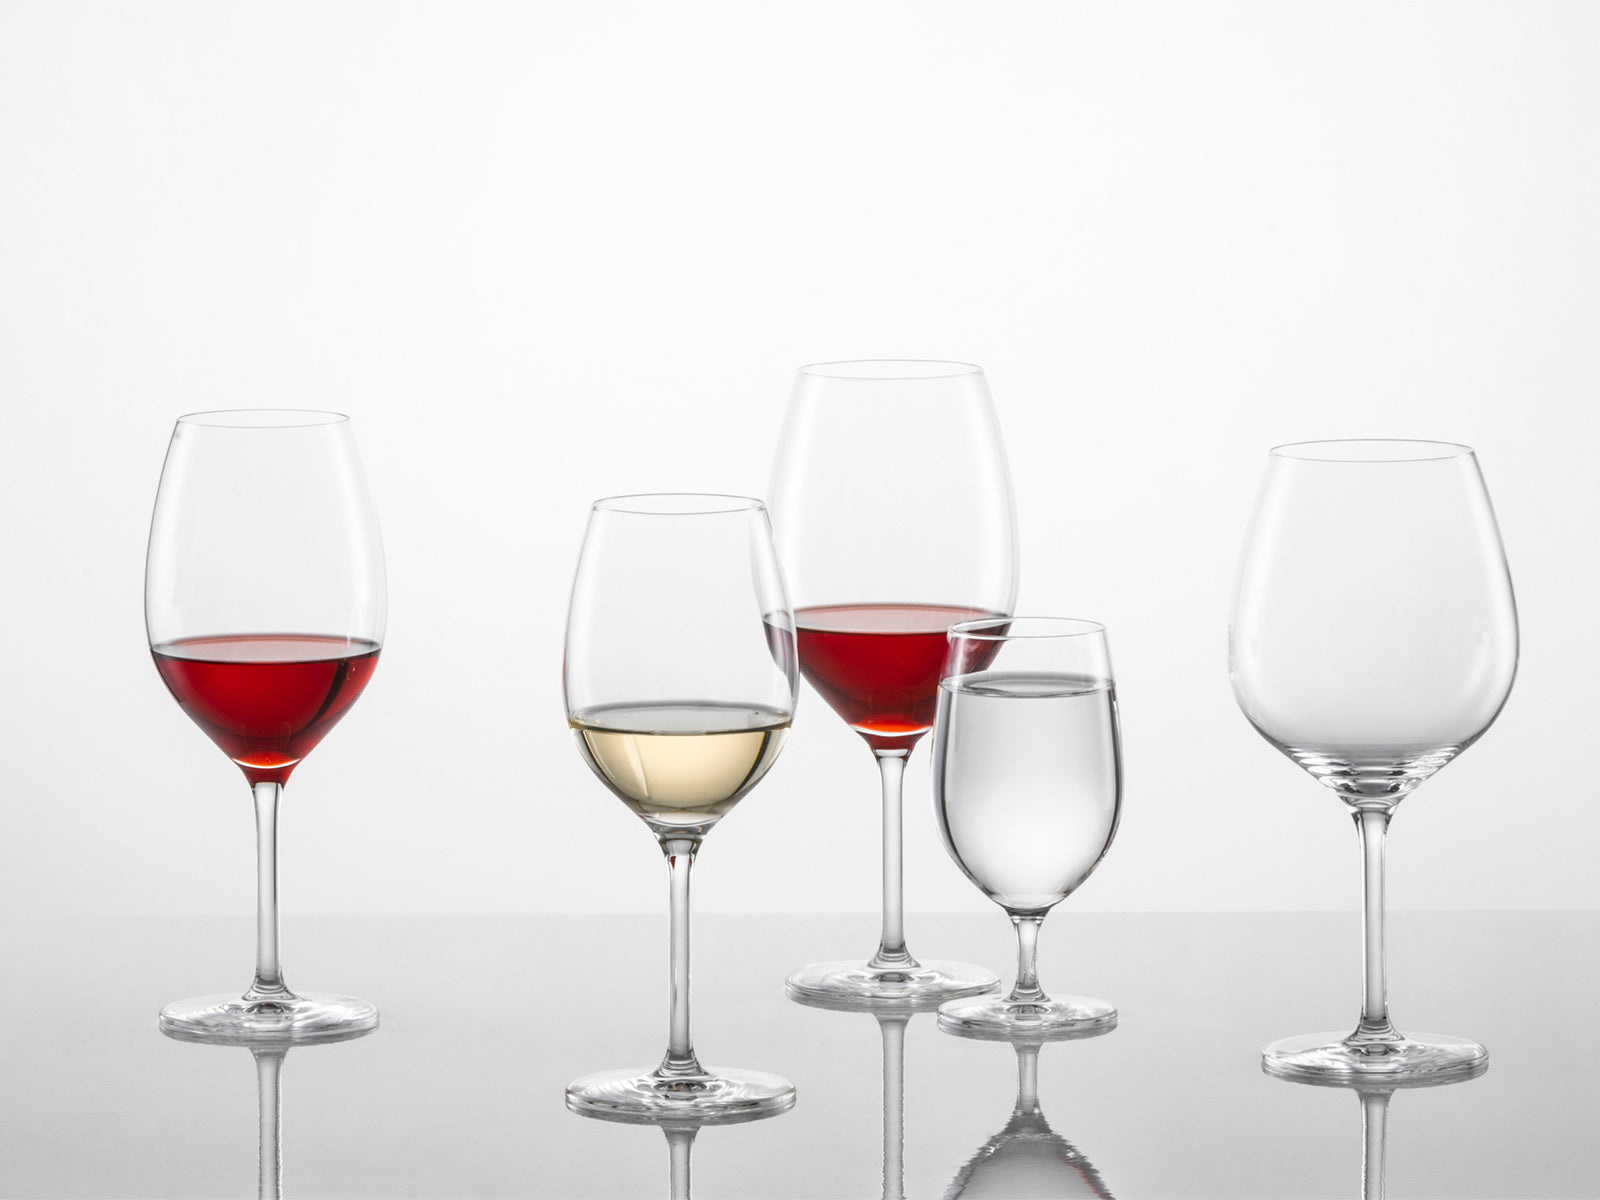 Cuál es la copa adecuada para cada tipo de vino? - Vinos de Finca s.XXI